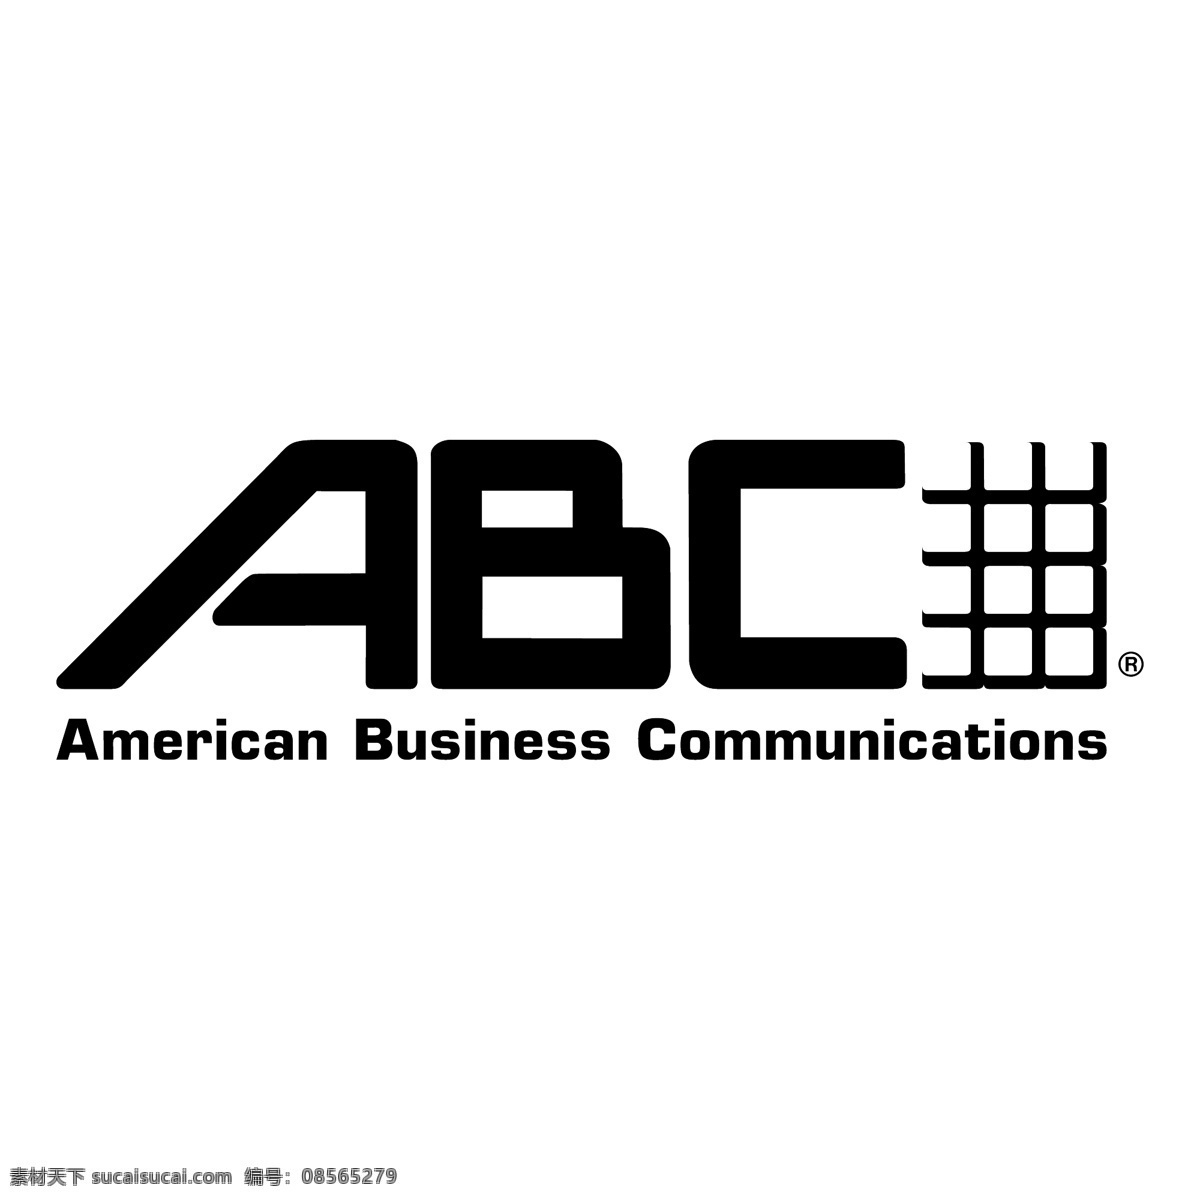 246 abc 标识 公司 免费 品牌 品牌标识 商标 矢量标志下载 免费矢量标识 矢量 psd源文件 logo设计